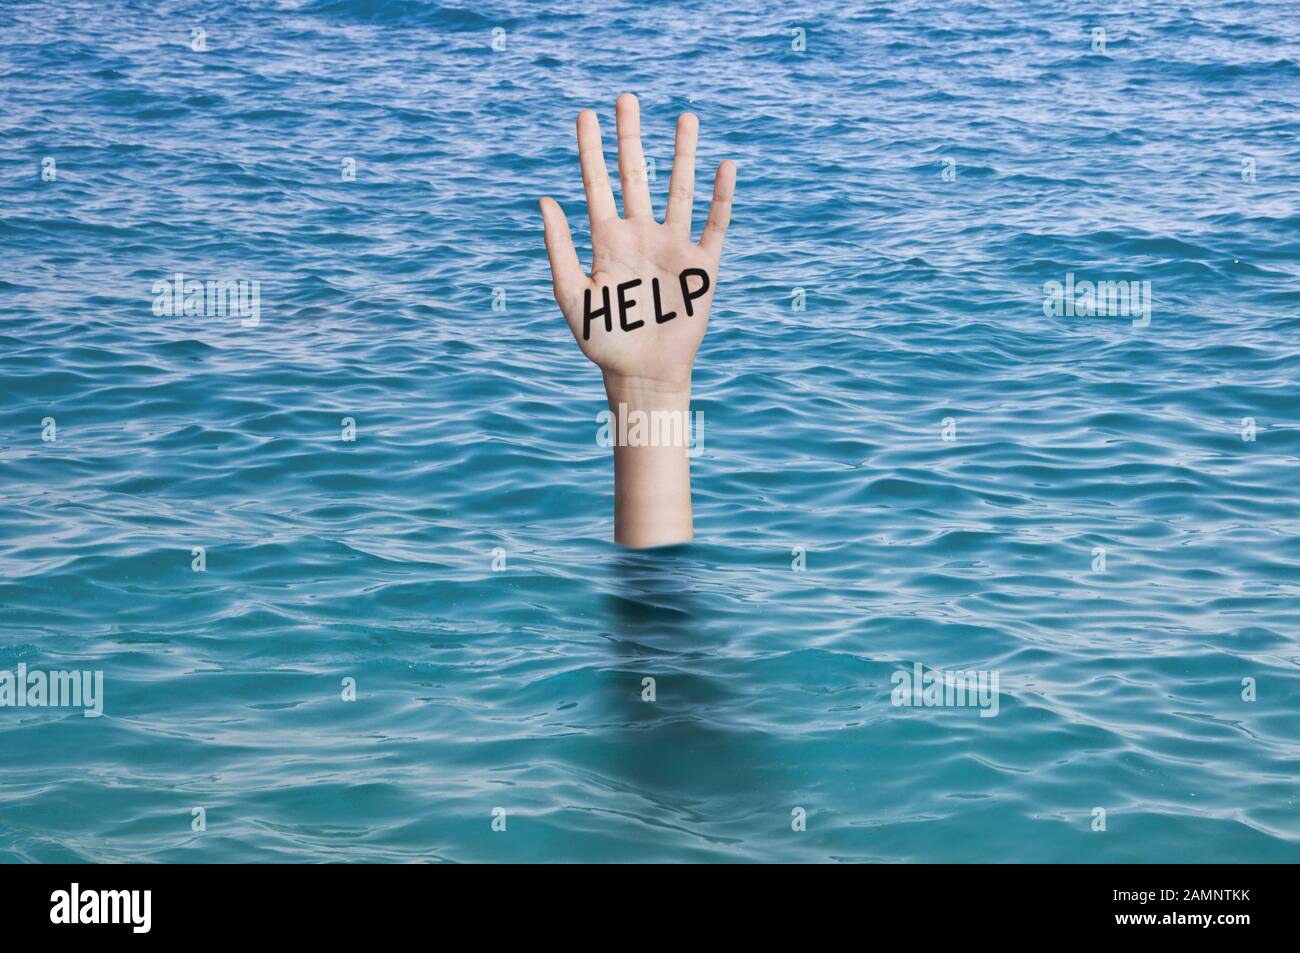 Palabra de ayuda escrita en la palma de una mano que se hunde en el agua del océano. Ahogamiento de la persona concepto de emergencia, fracaso y ayuda Foto de stock